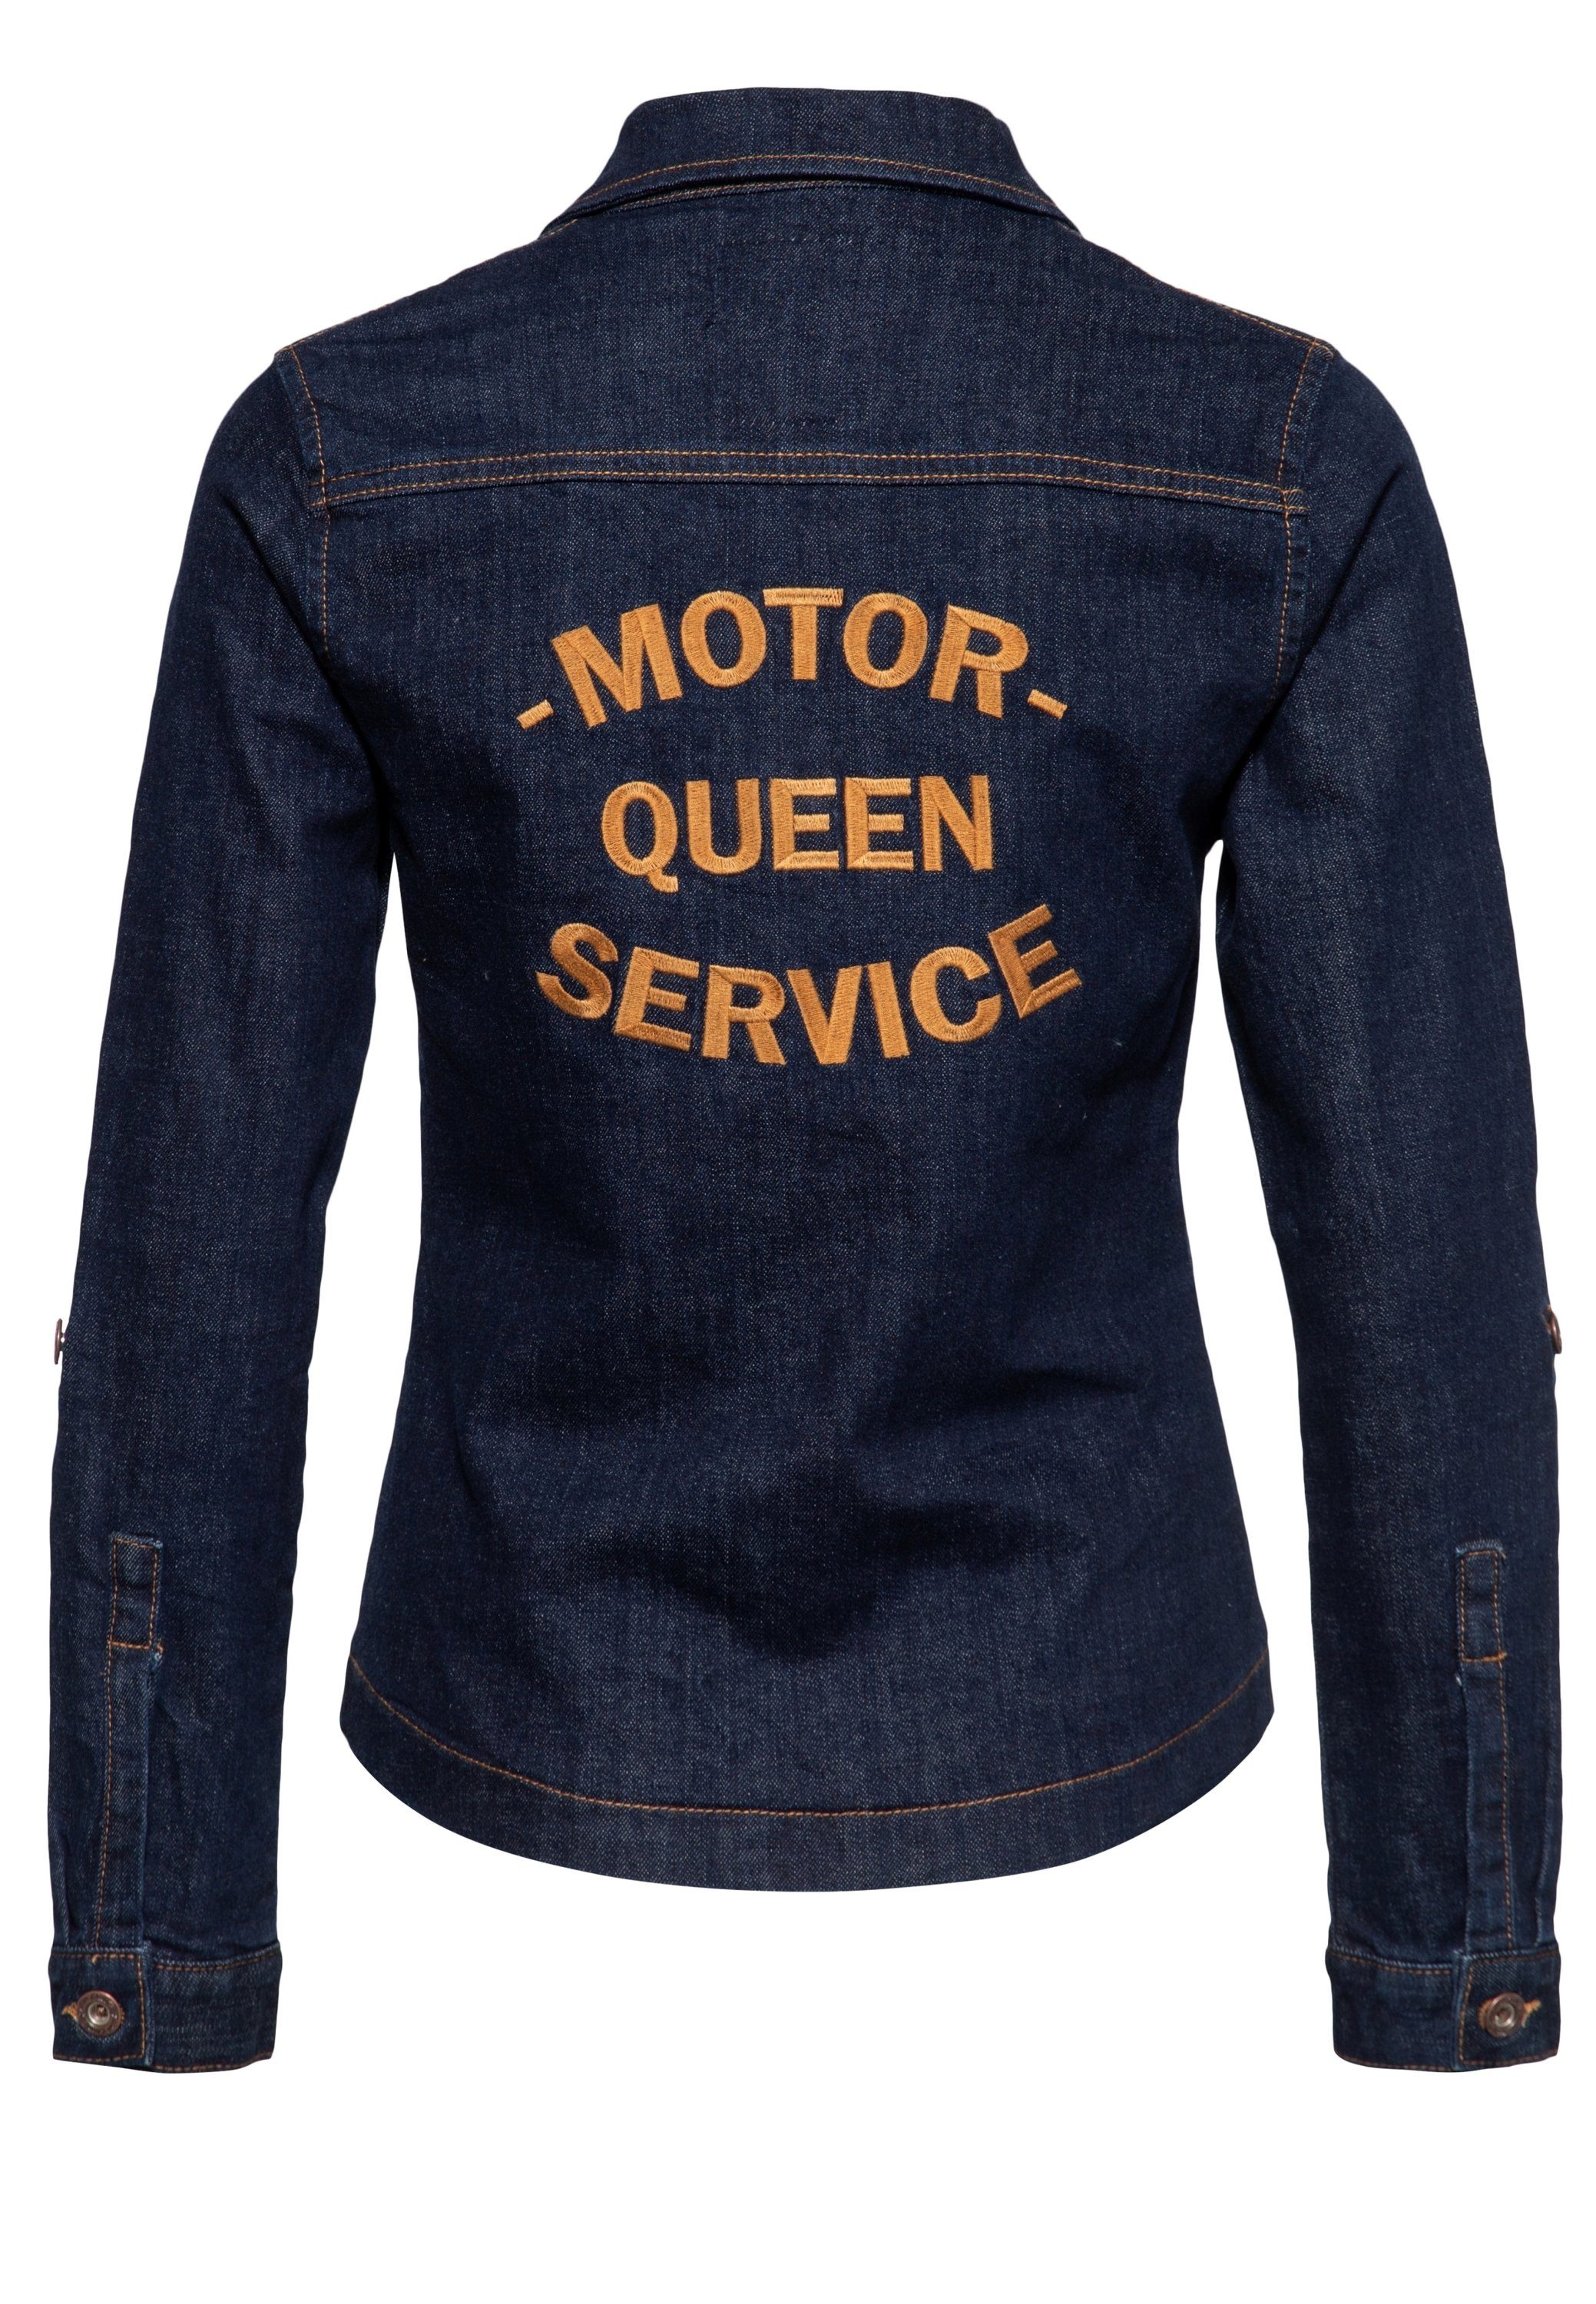 Hemdbluse Queen Motor QueenKerosin Service Workwearstyle im